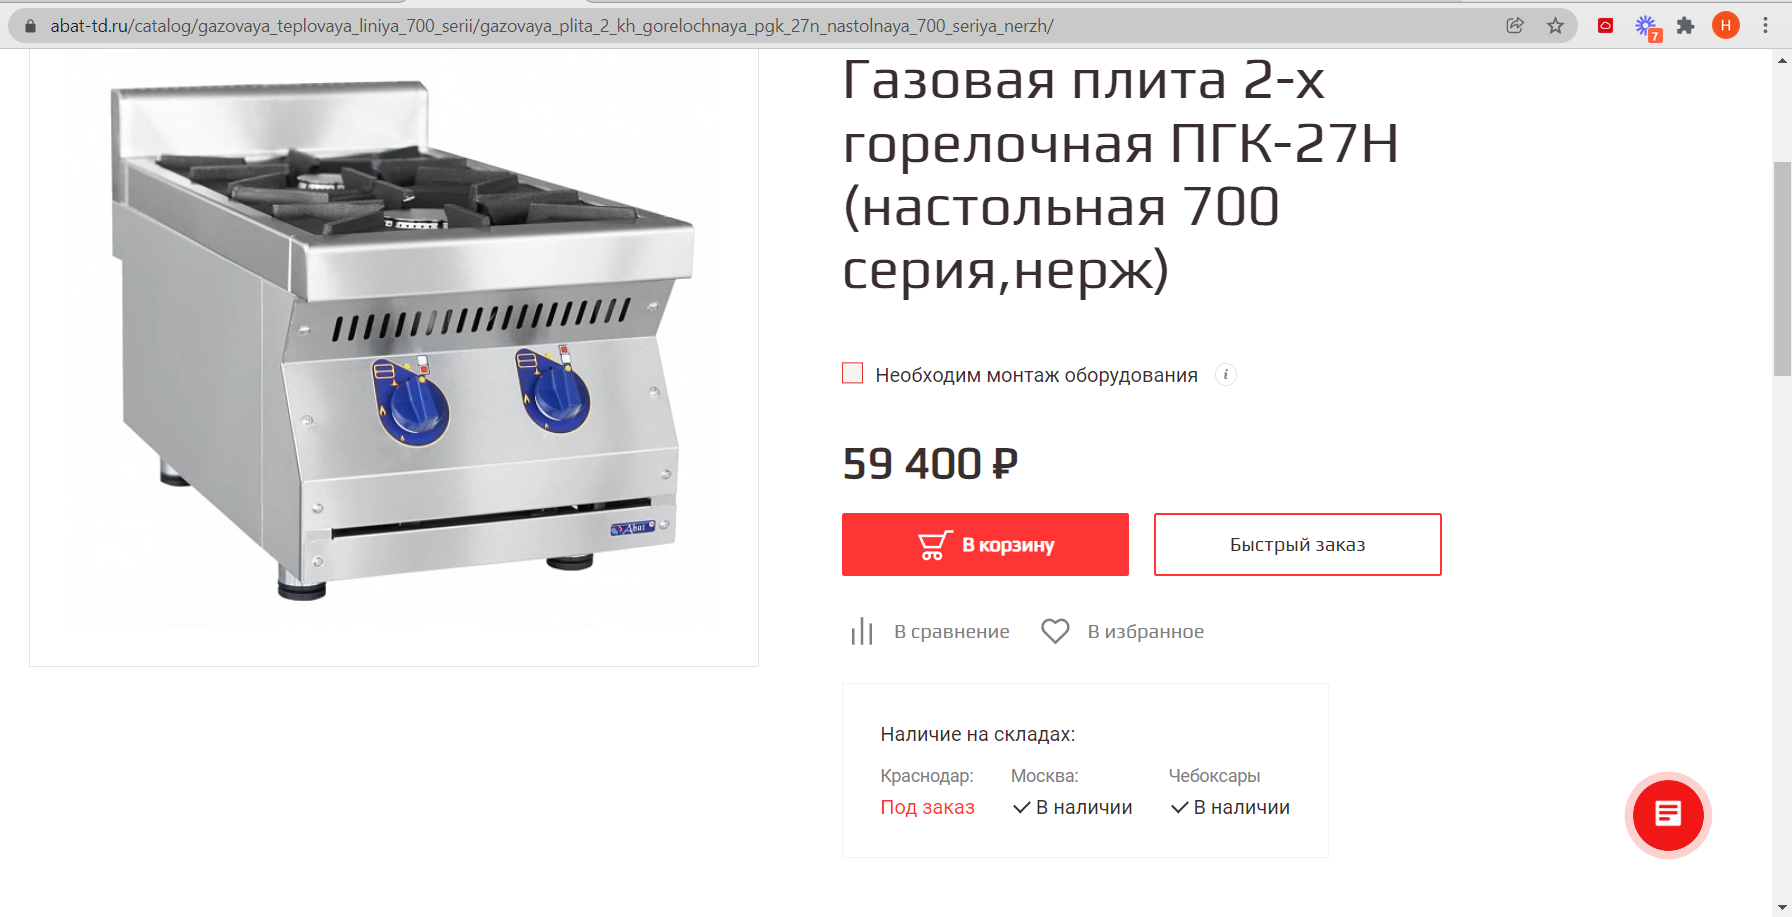 абат. продажа профессионального кухонного оборудования